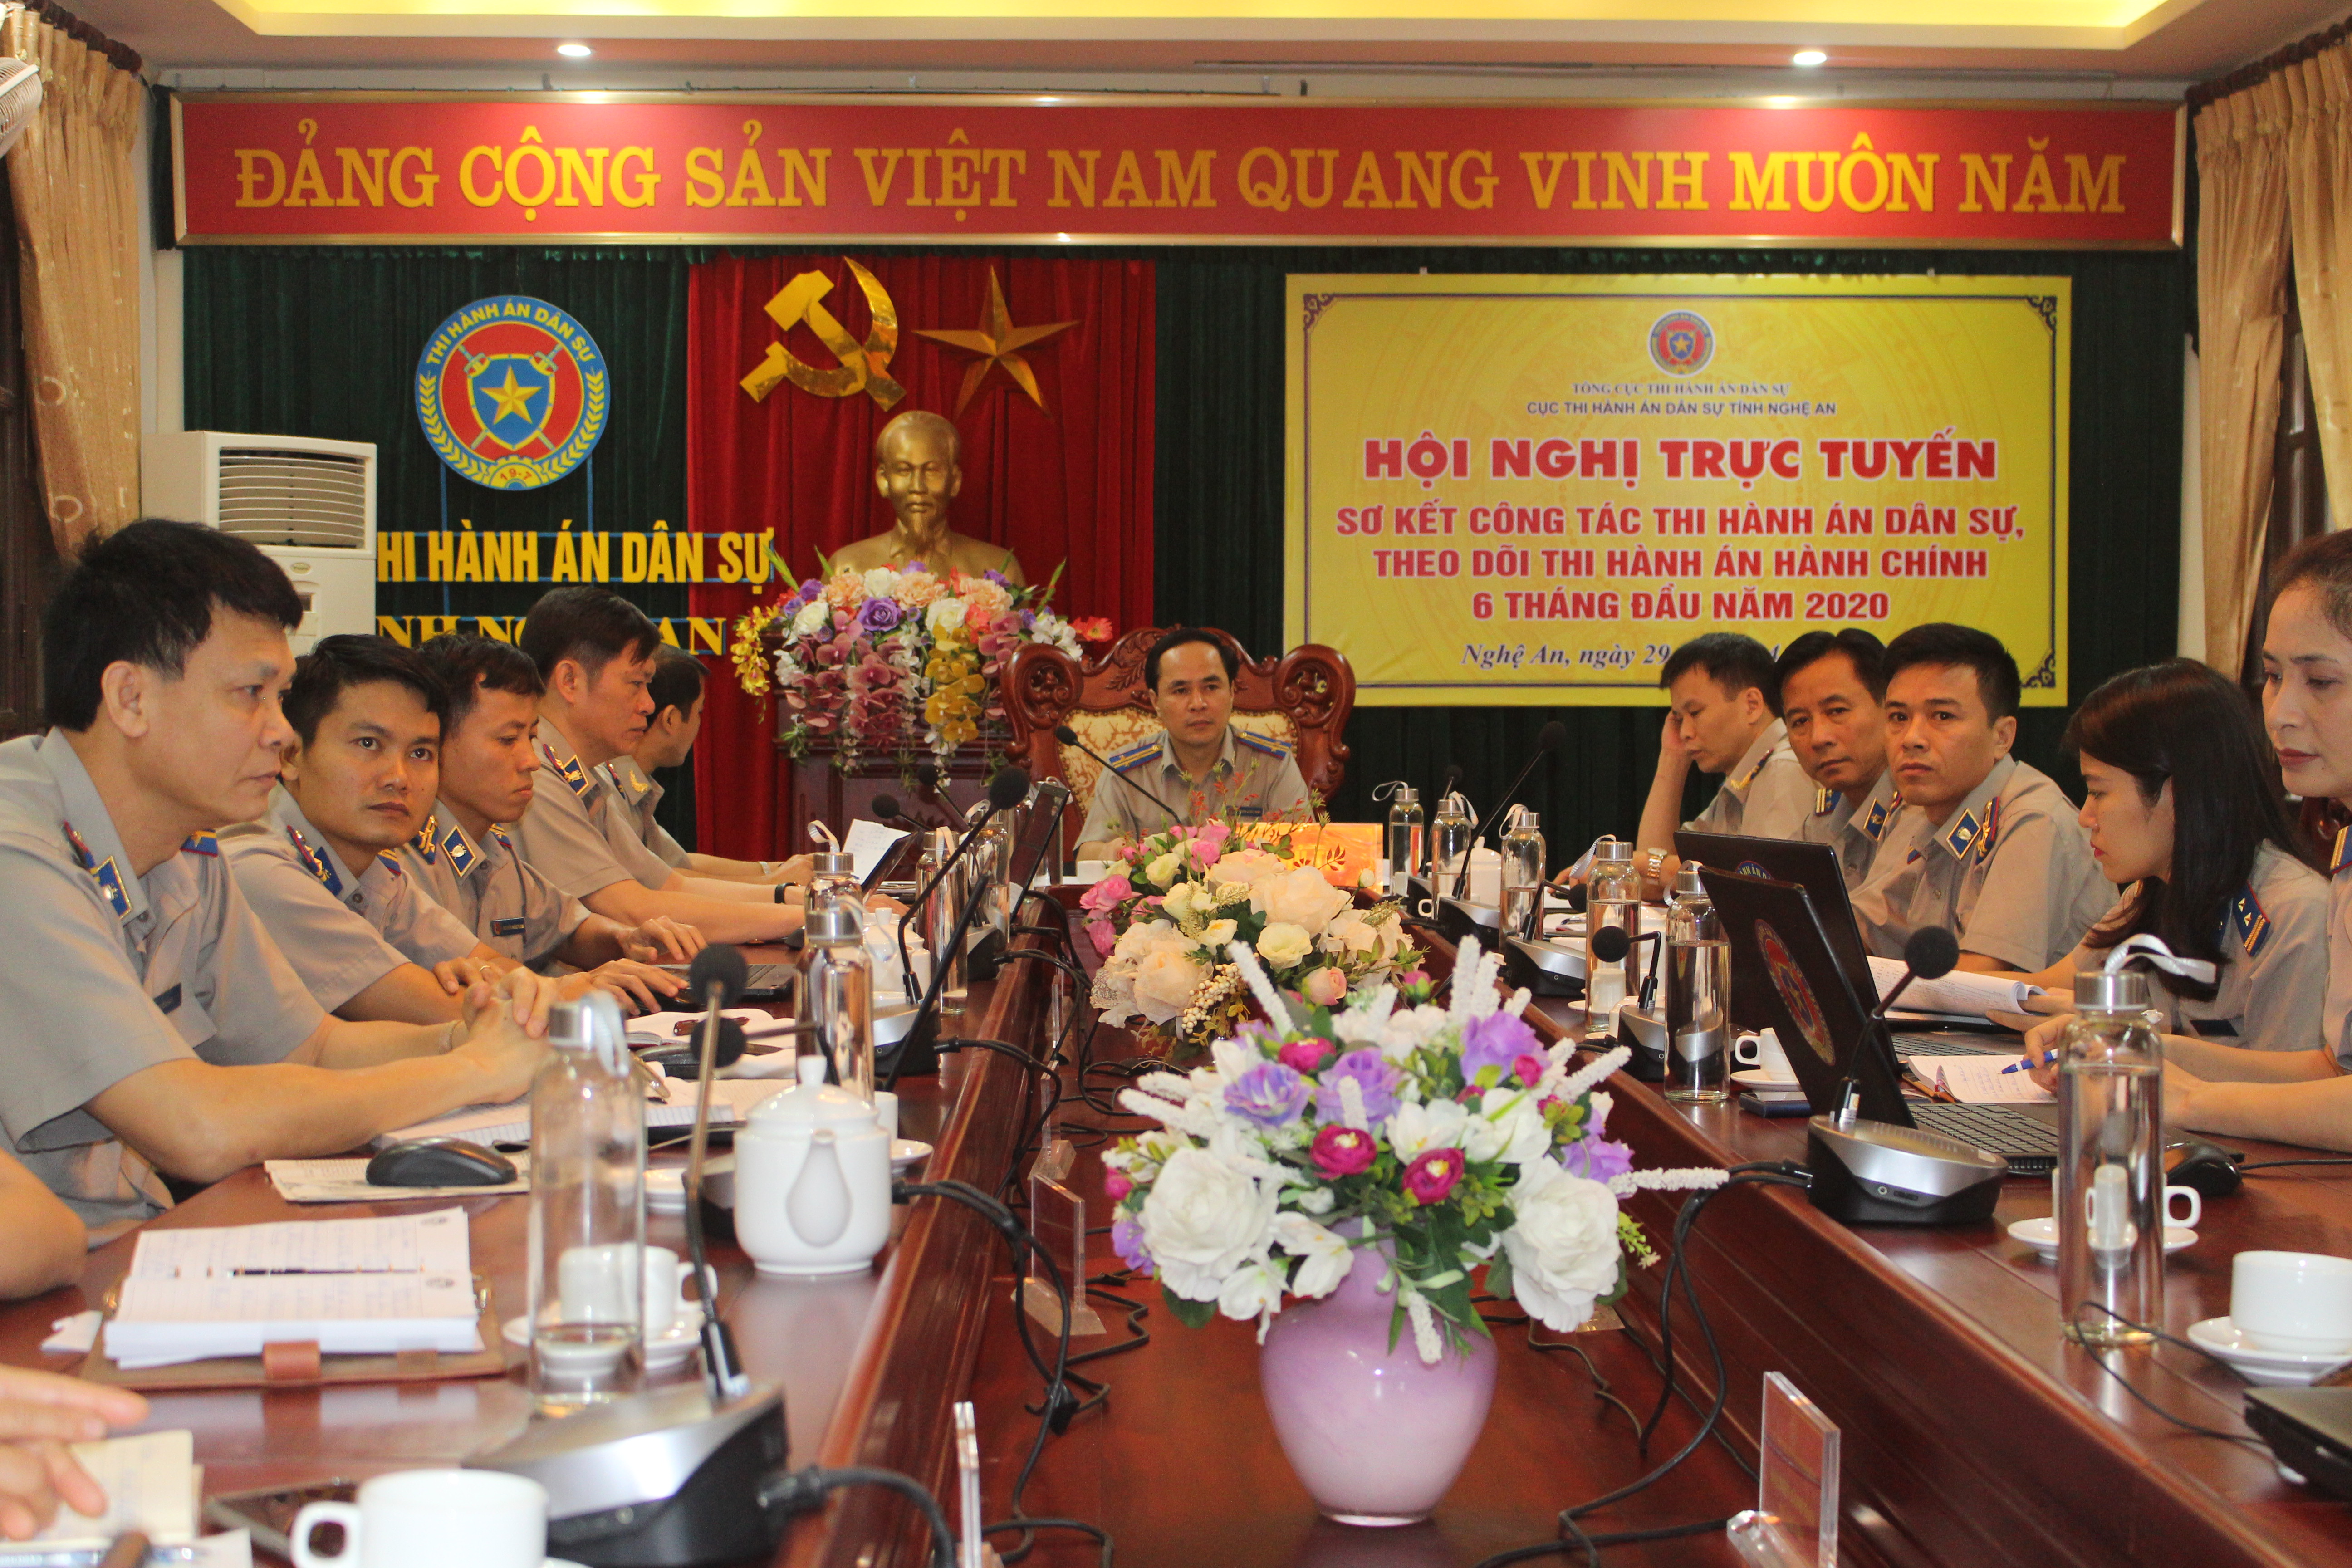 Cục Thi hành án dân sự tỉnh Nghệ An tổ chức Hội nghị trực tuyến sơ kết công tác Thi hành án dân sự, theo dõi thi hành án hành chính 6 tháng đầu năm 2020.